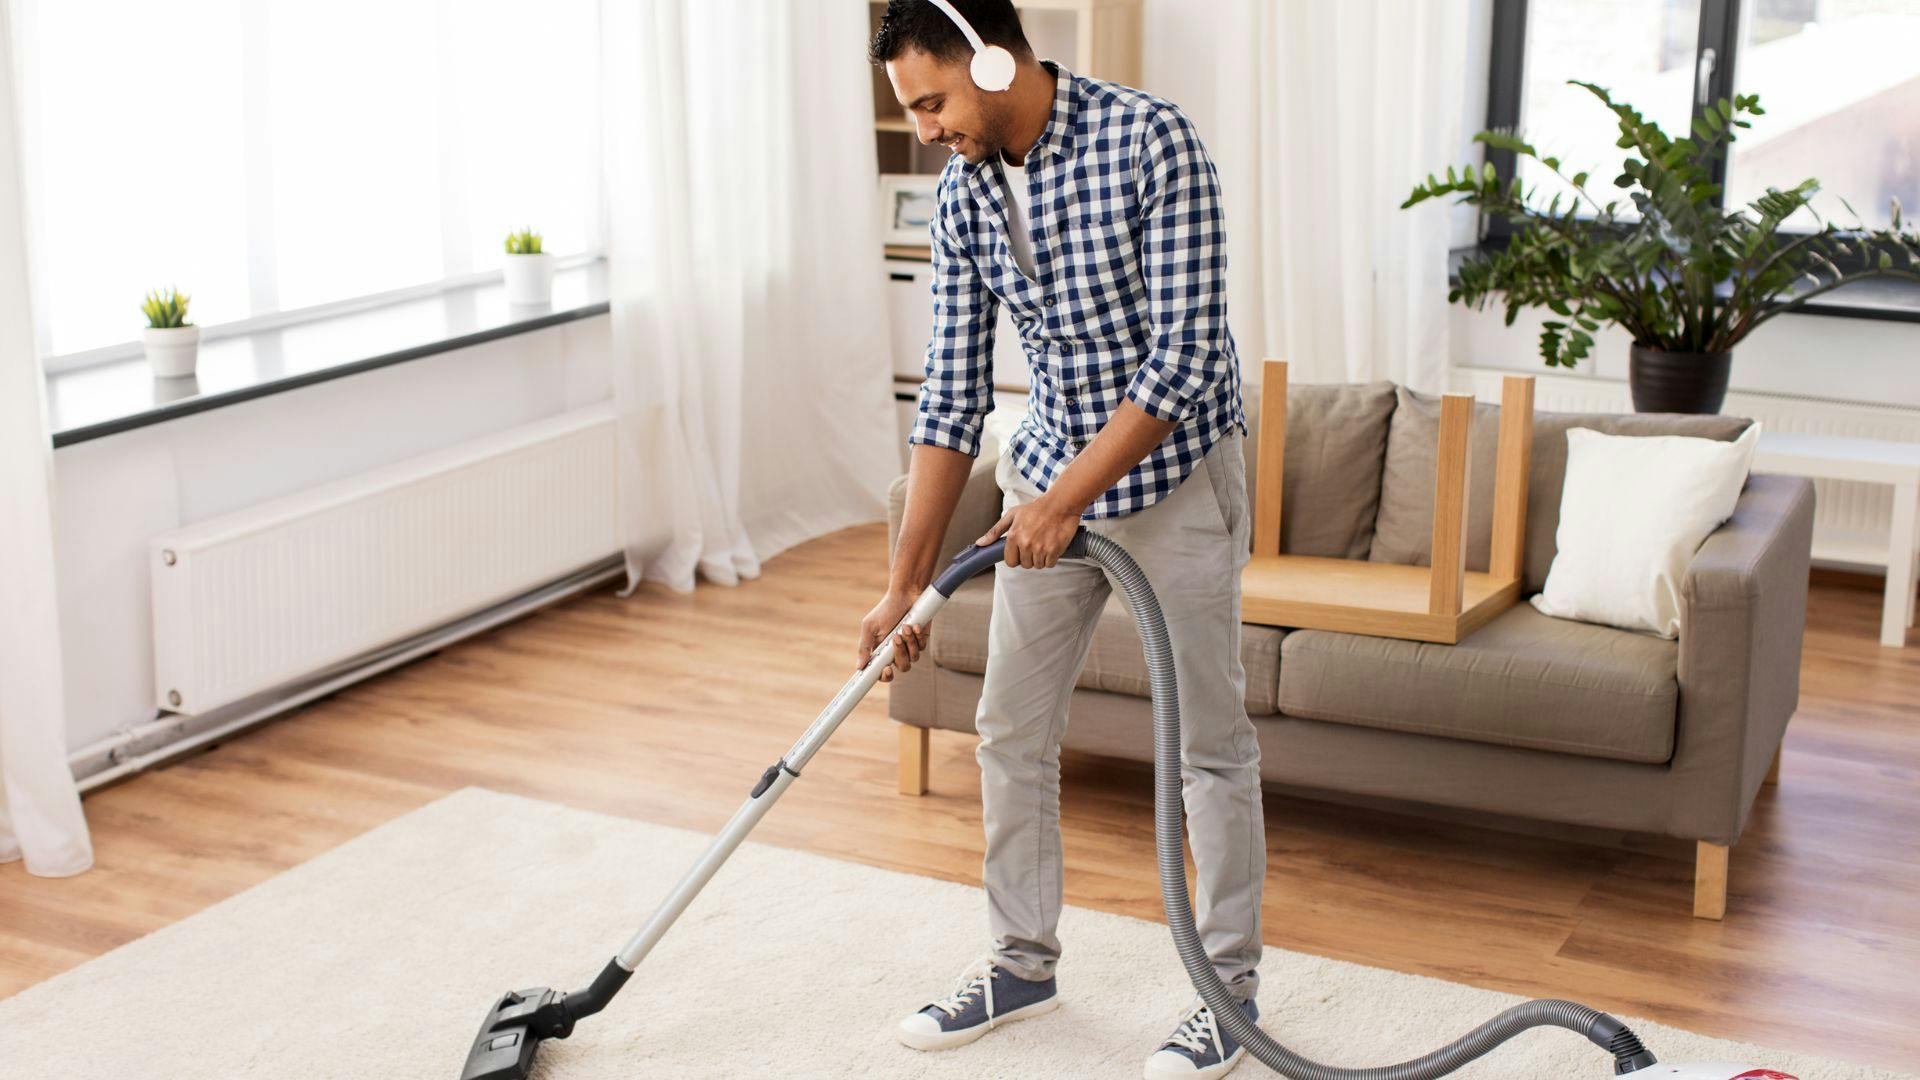 Male field service cleaner wearing headphones as he vacuums rug in living room